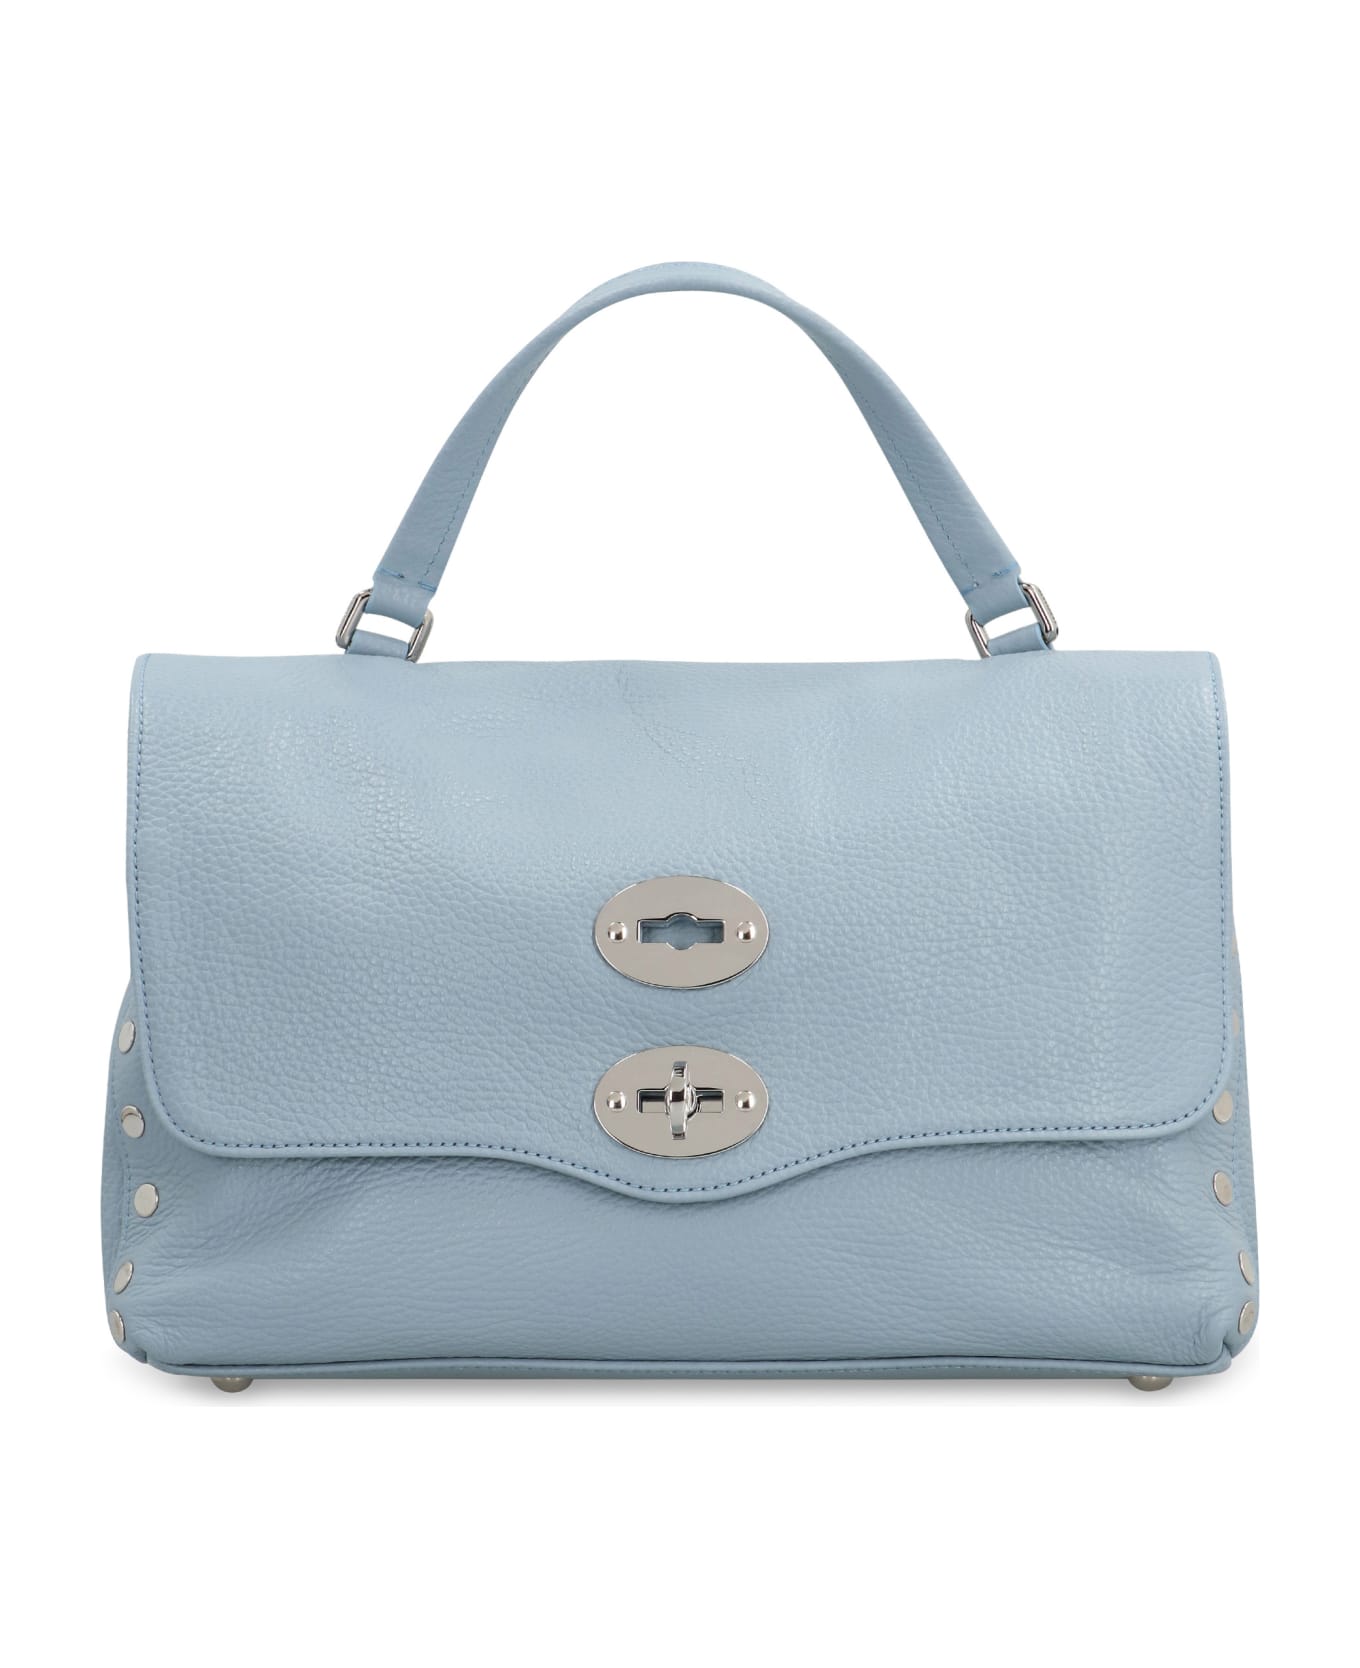 Zanellato Postina S Leather Handbag - Light Blue